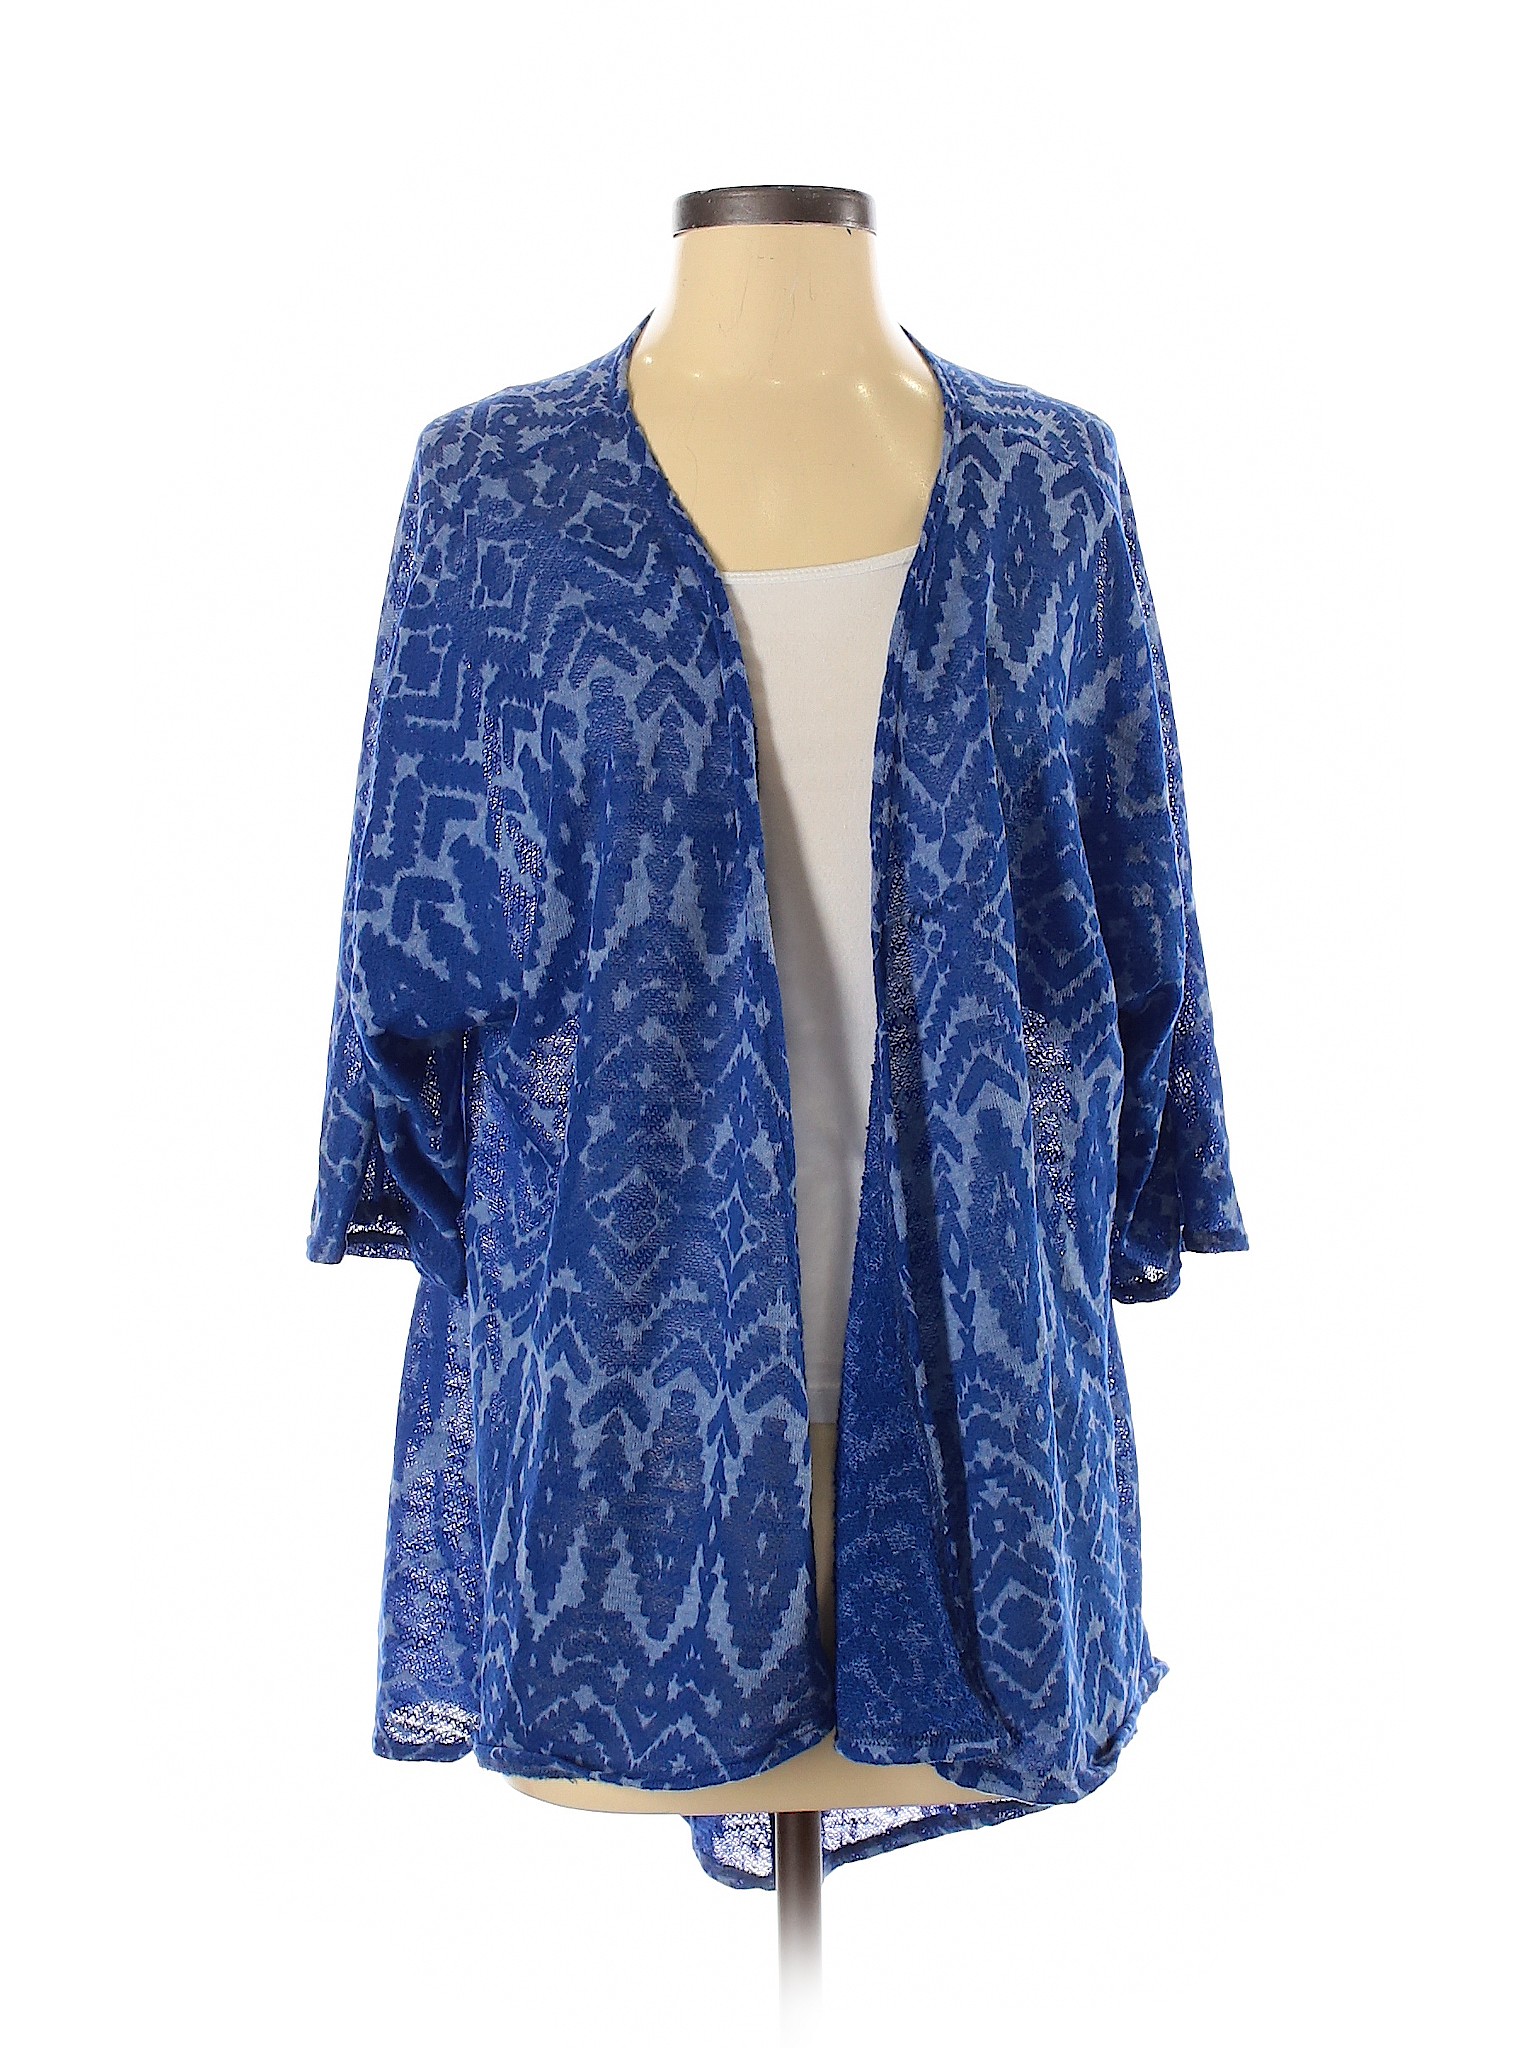 Lularoe Women Blue Cardigan S | eBay